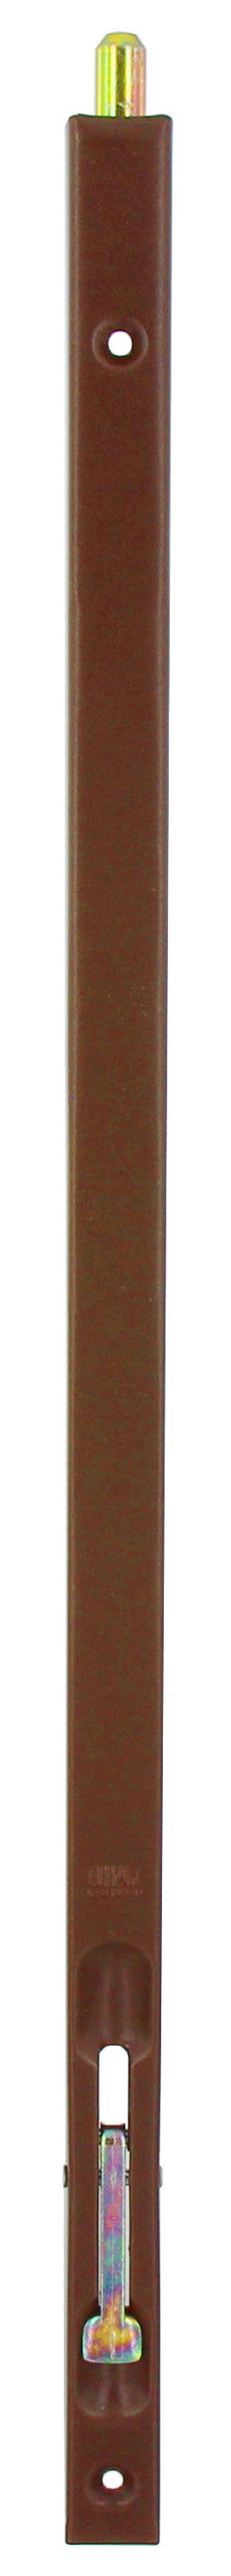 Bl catenaccio incasso bronzato 500 mm